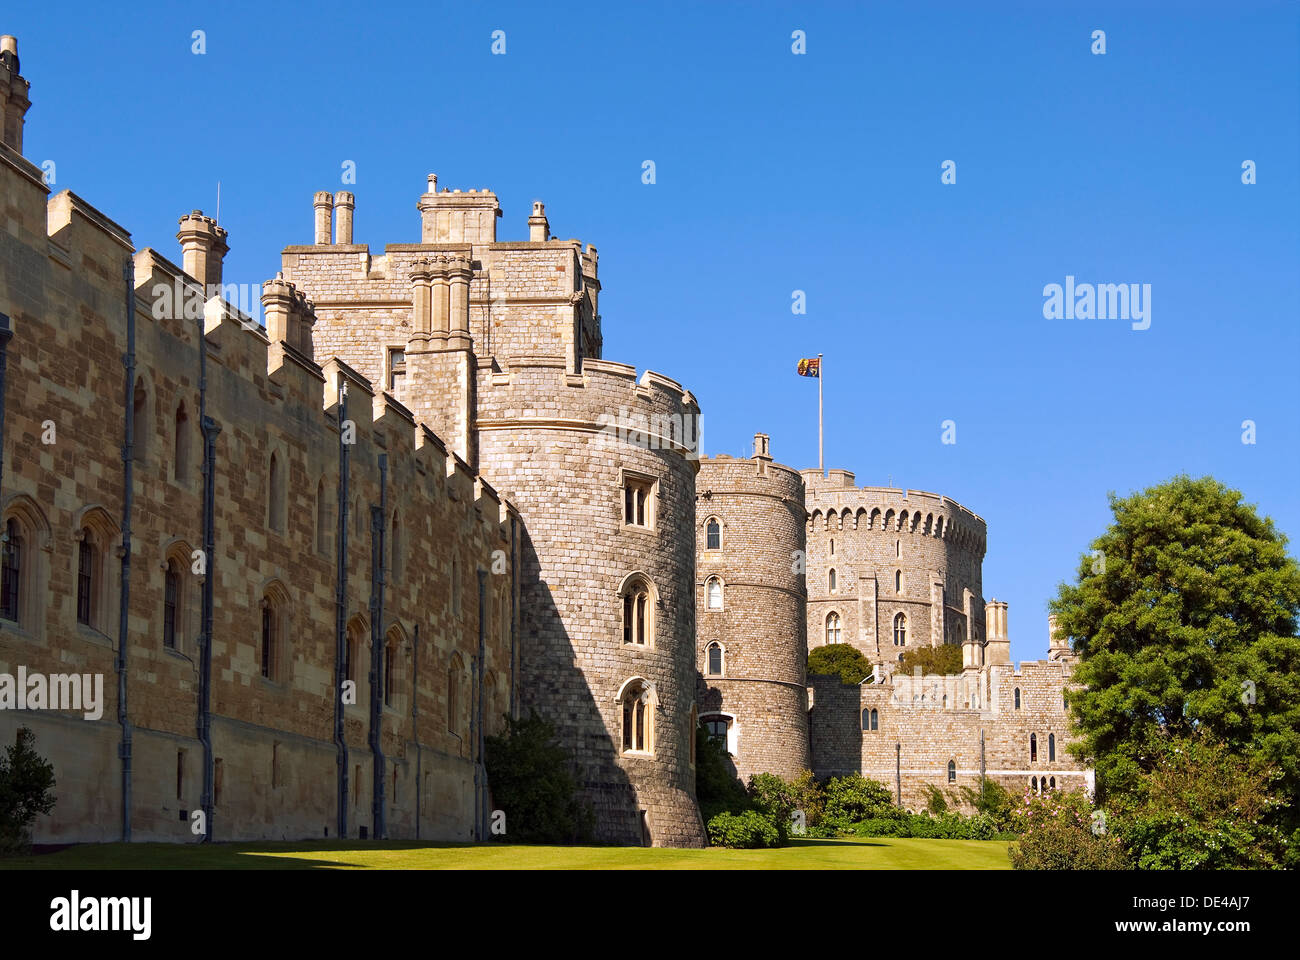 Il Castello di Windsor, in Windsor nella contea inglese del Berkshire, il  più grande castello abitato nel mondo Foto stock - Alamy